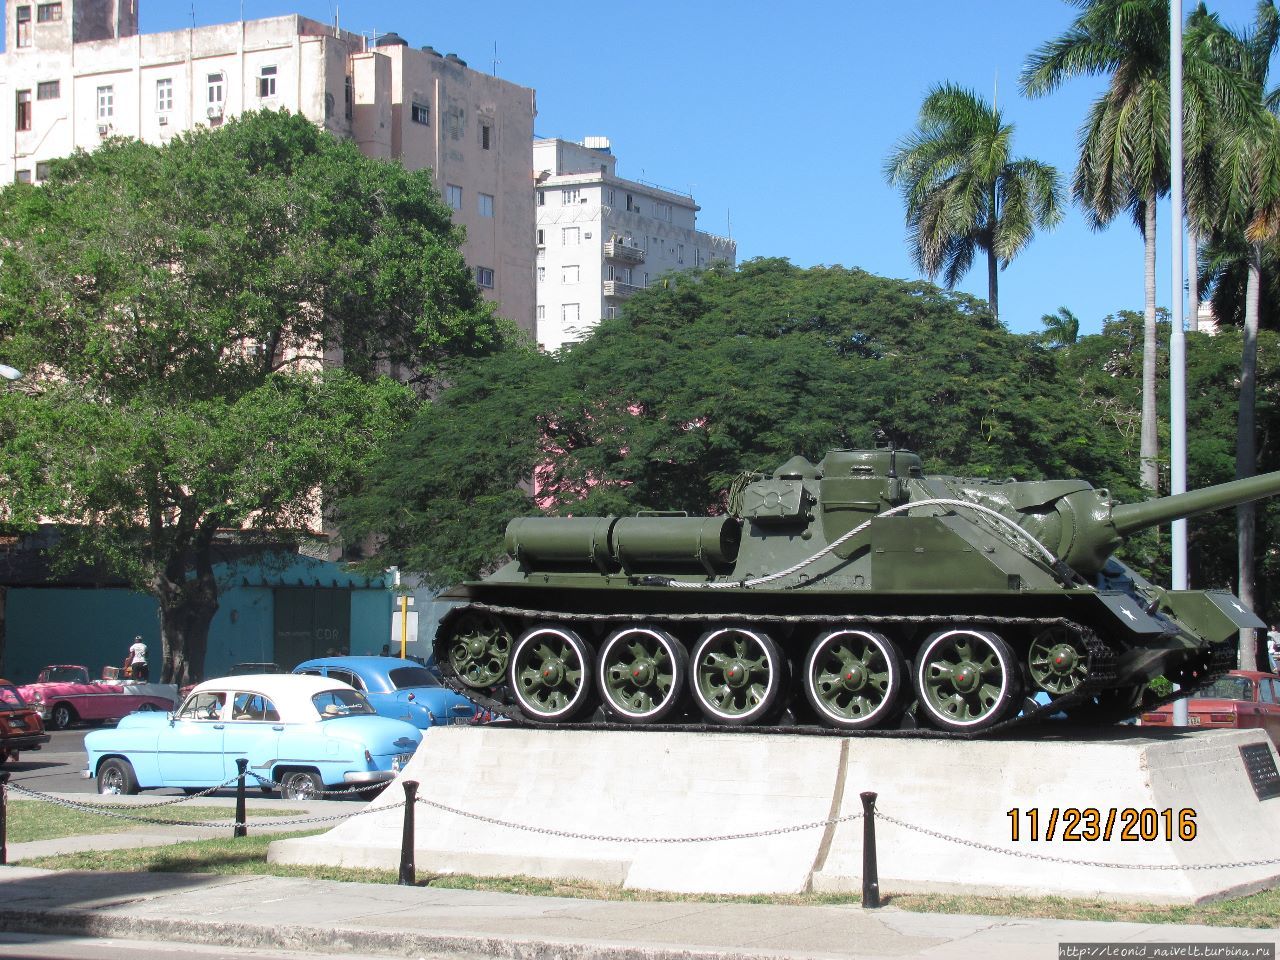 Гавана. Куба. О житье-бытье, еде-питье, культур-мультуре Ч2 Гавана, Куба